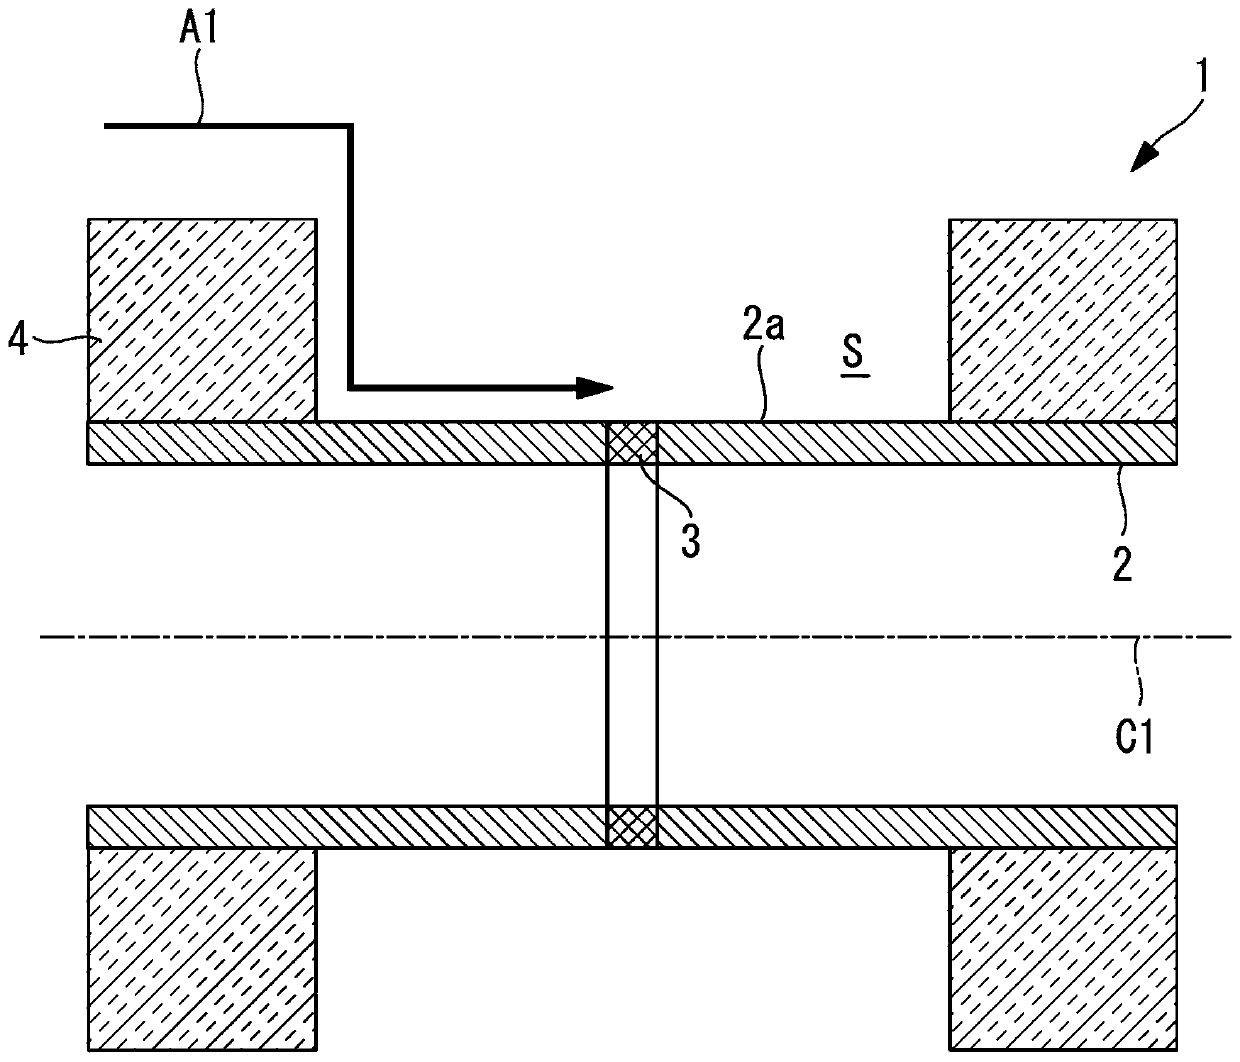 Metallic wall section cooling method